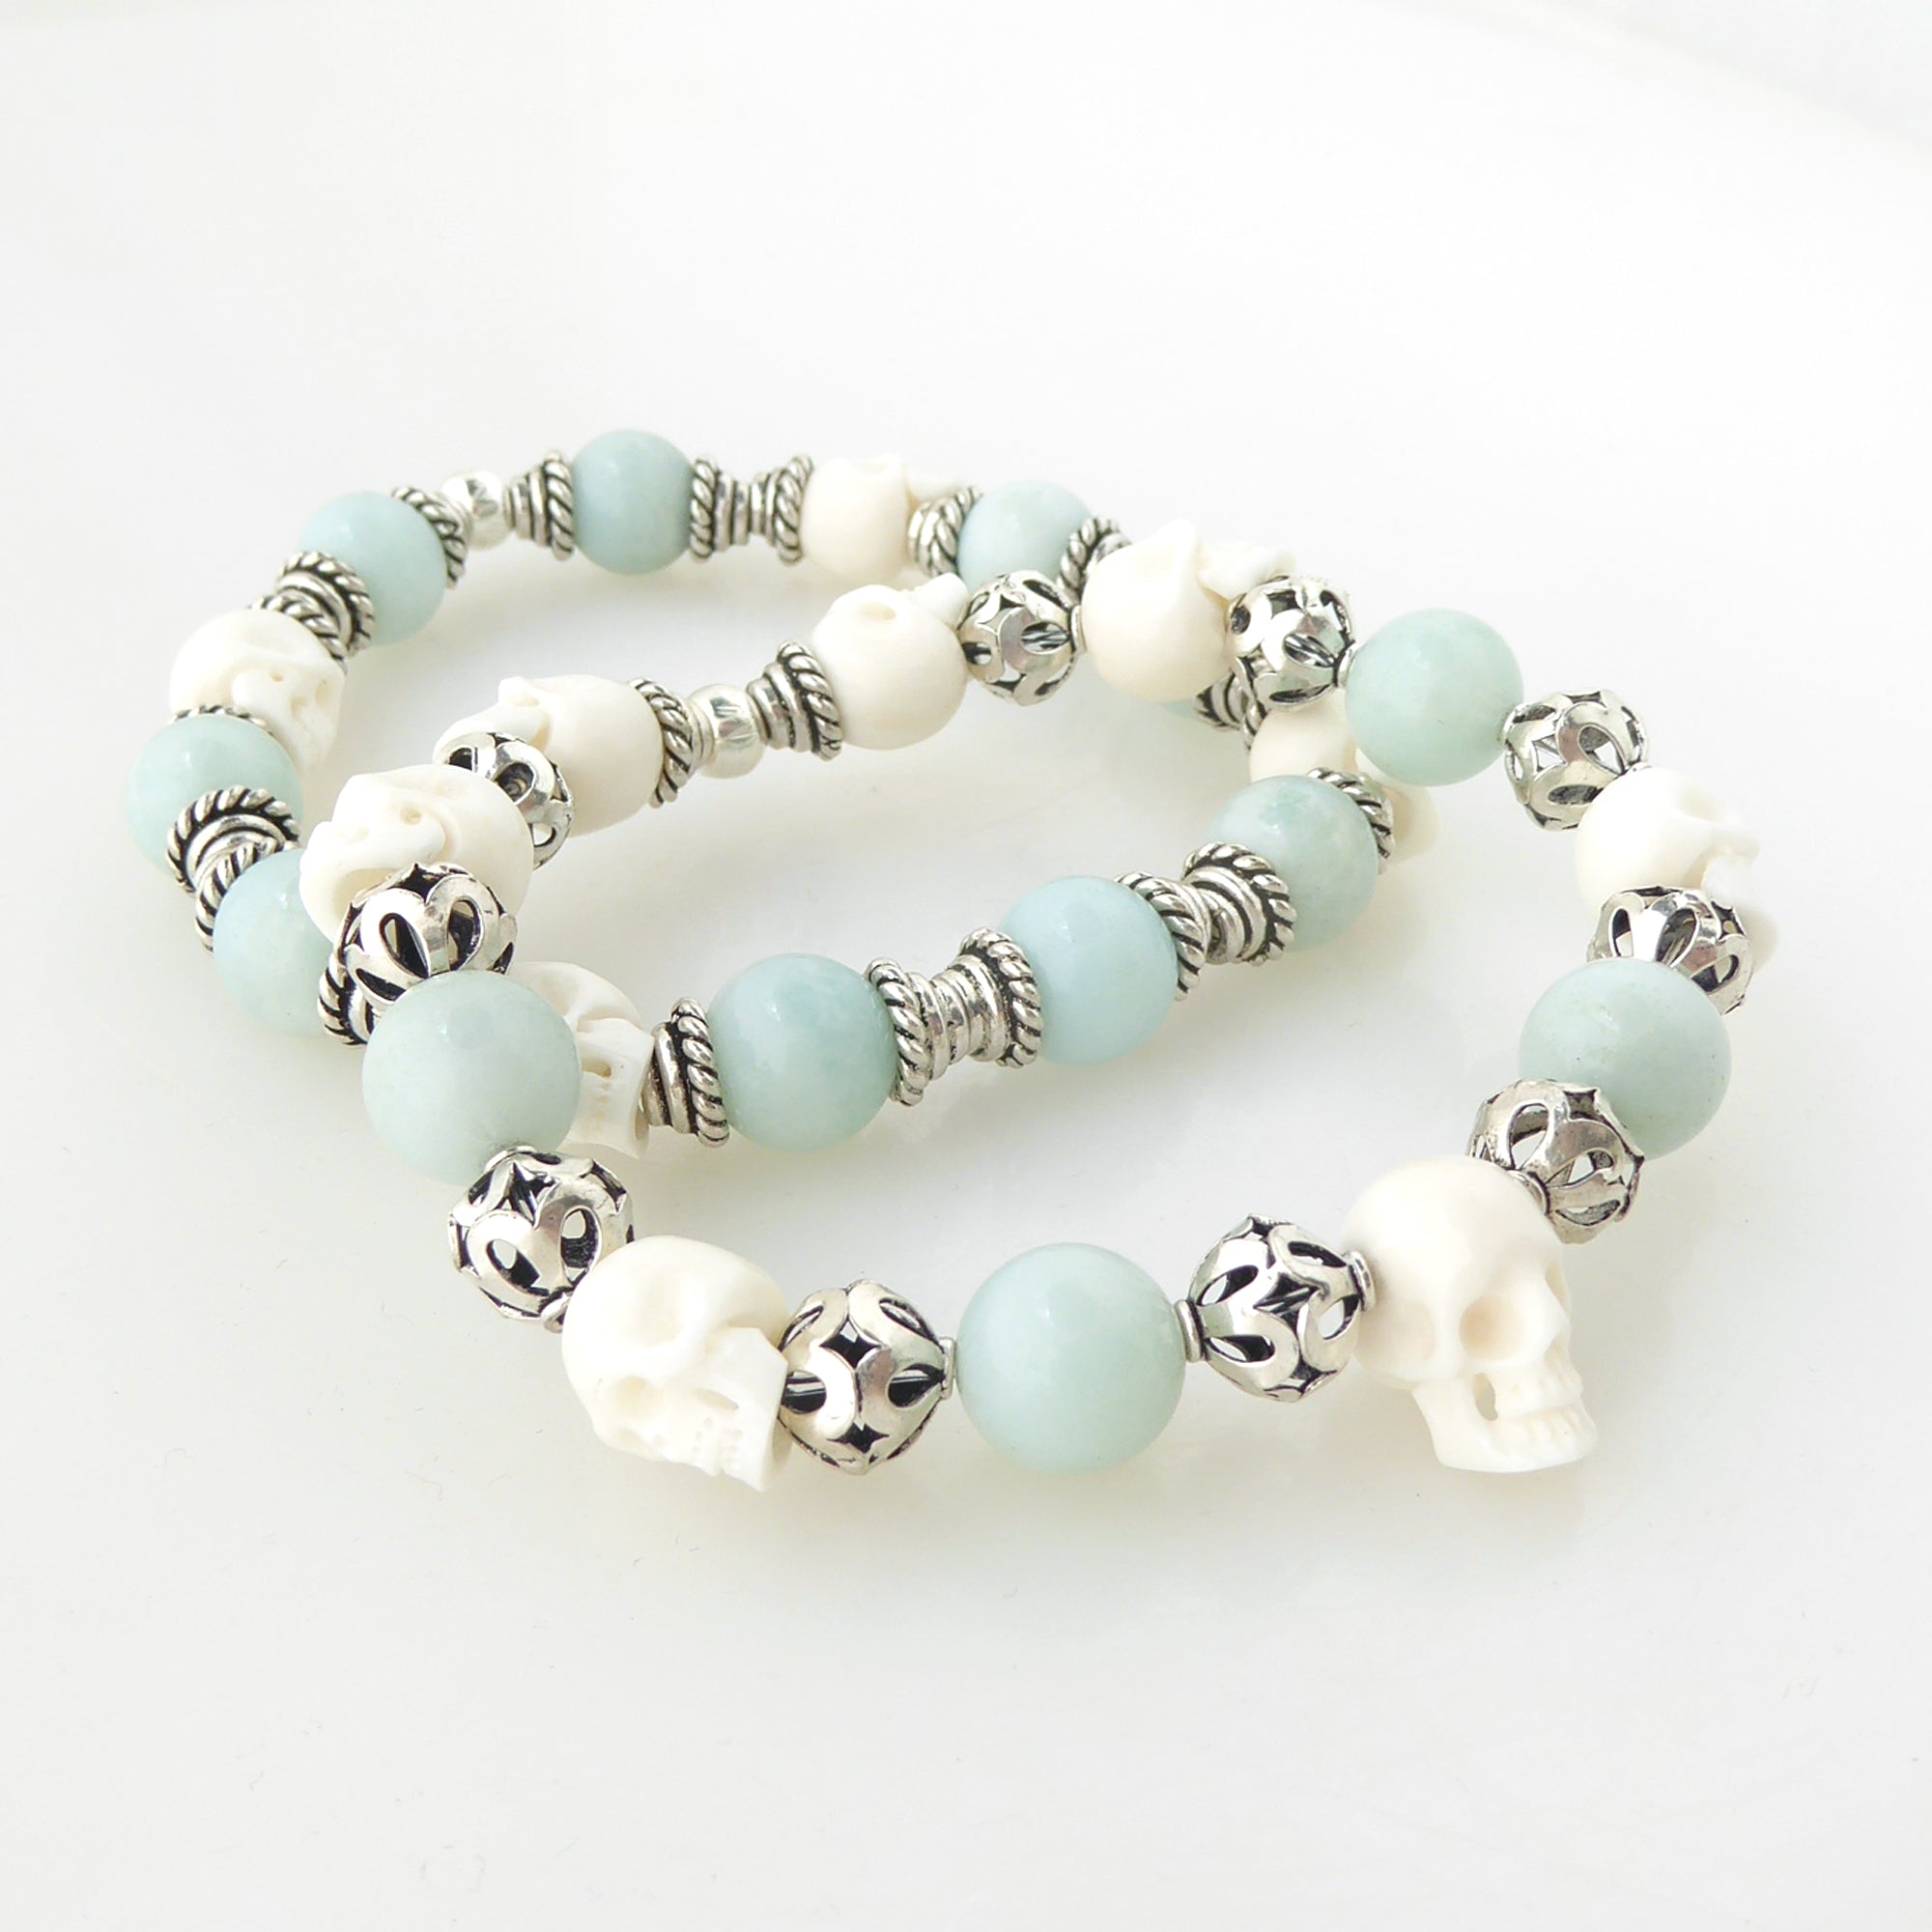 Jade and skull bracelet set by Jenny Dayco 2